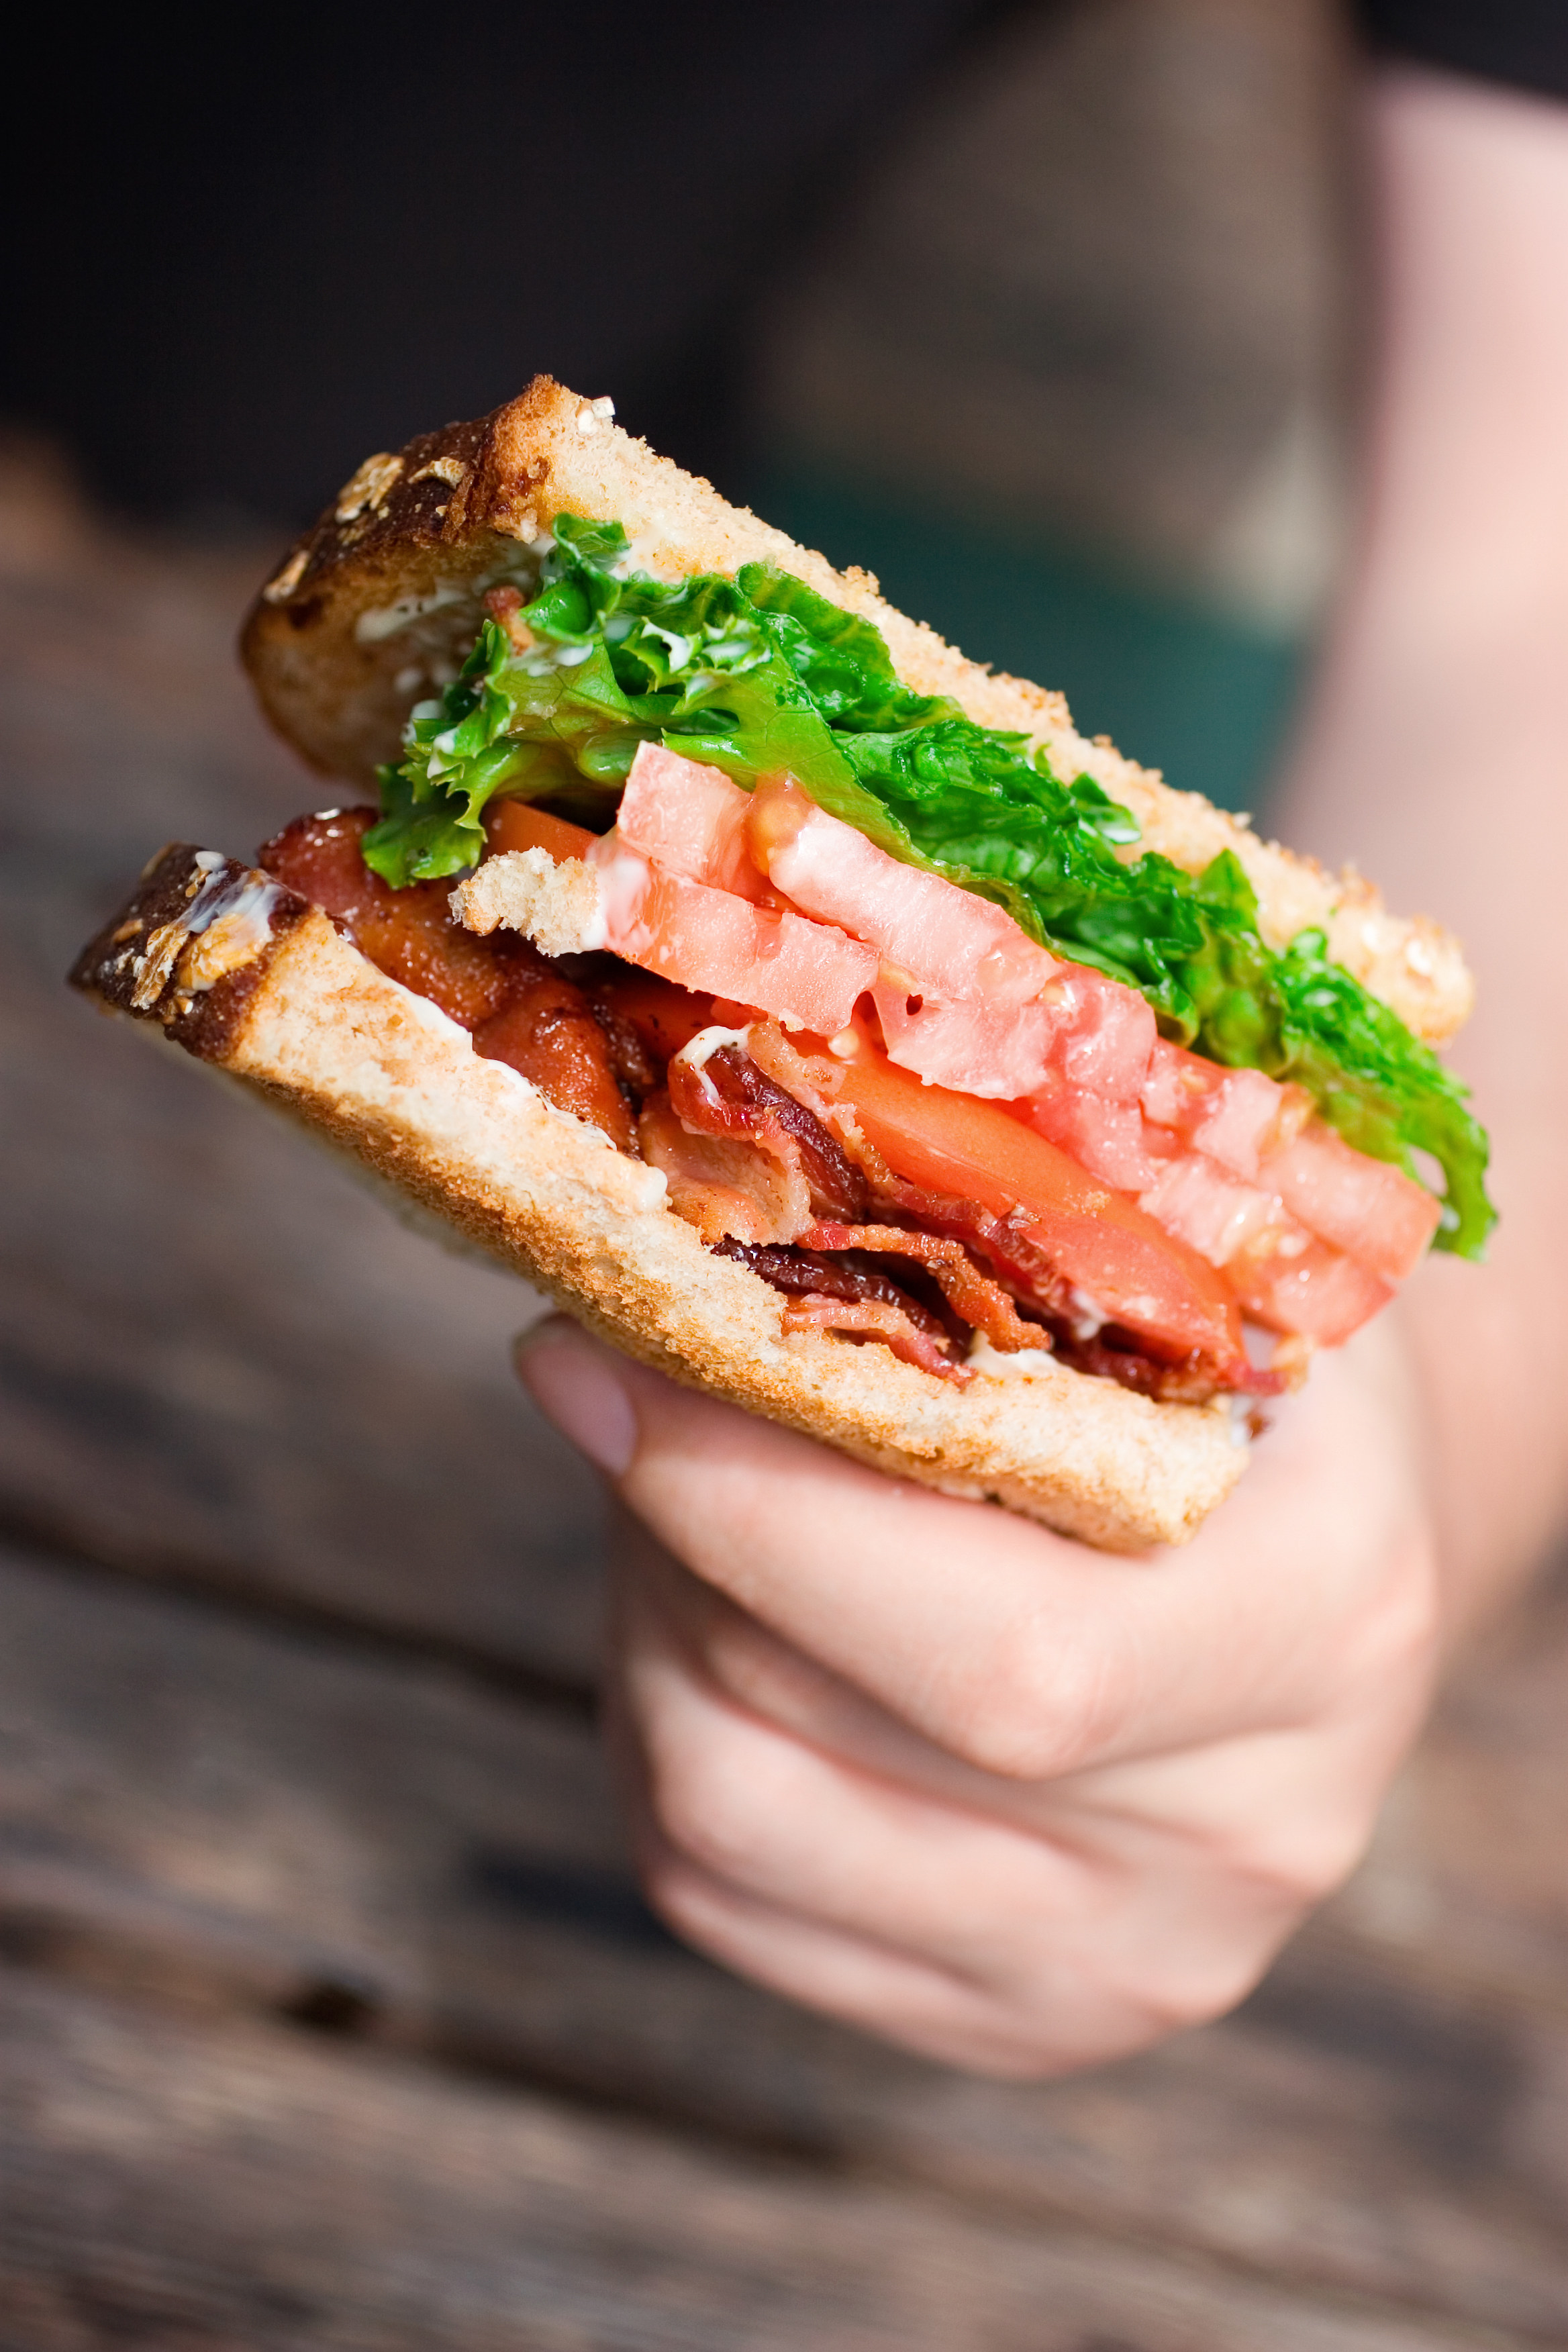 A hand holding a BLT sandwich